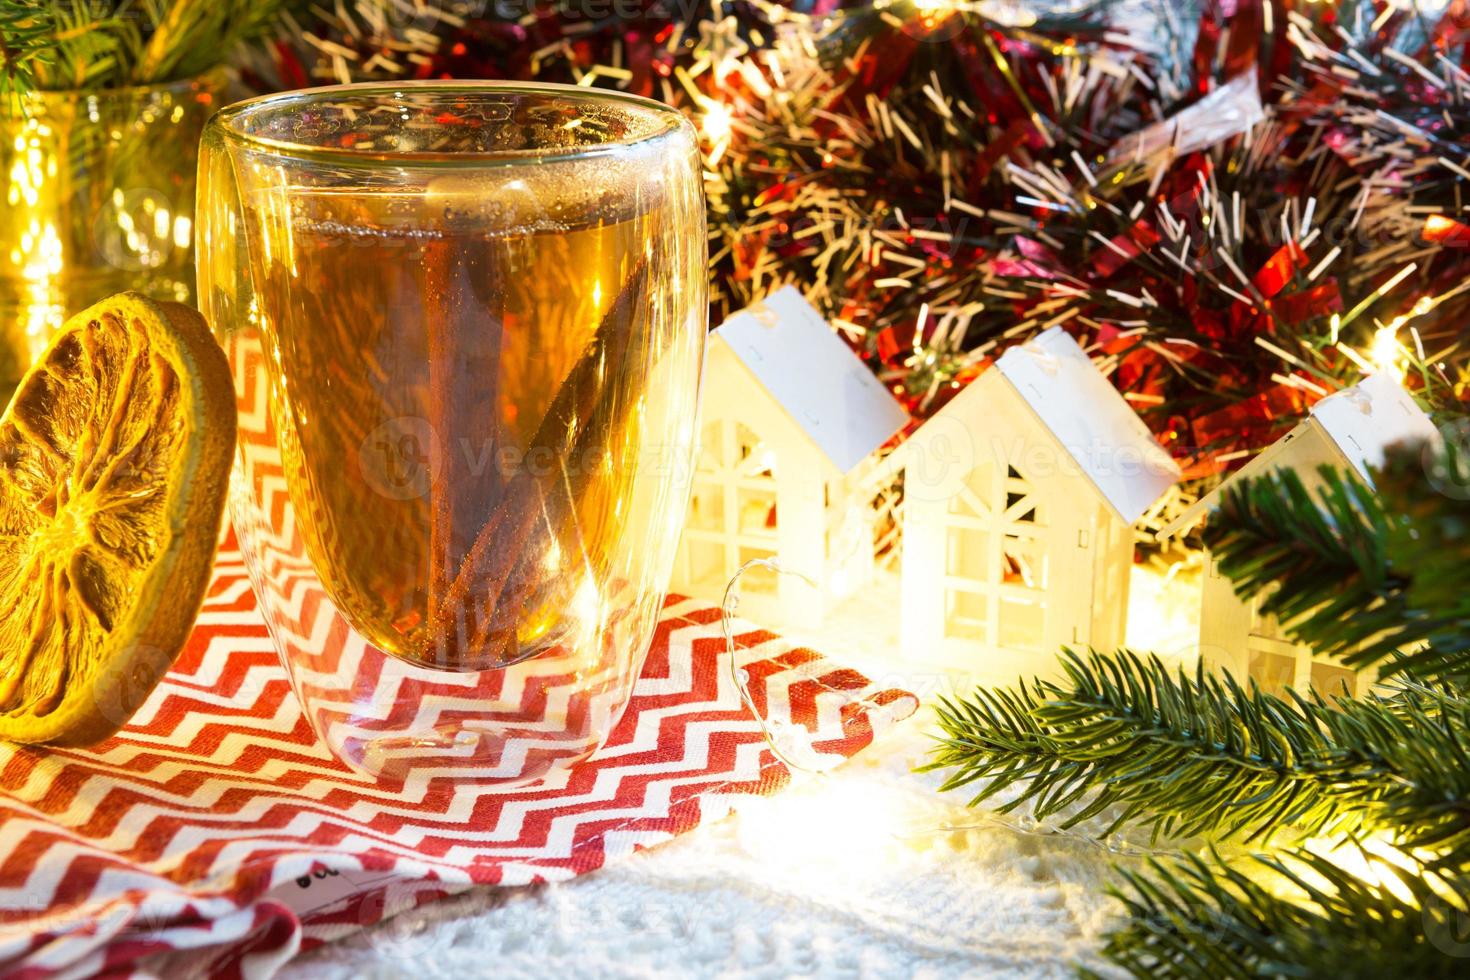 copo de vidro transparente de parede dupla com chá quente e paus de canela em cima da mesa com decoração de natal e casinha. atmosfera de ano novo, fatia de laranja seca, guirlanda, ramo de abeto, aconchegante foto